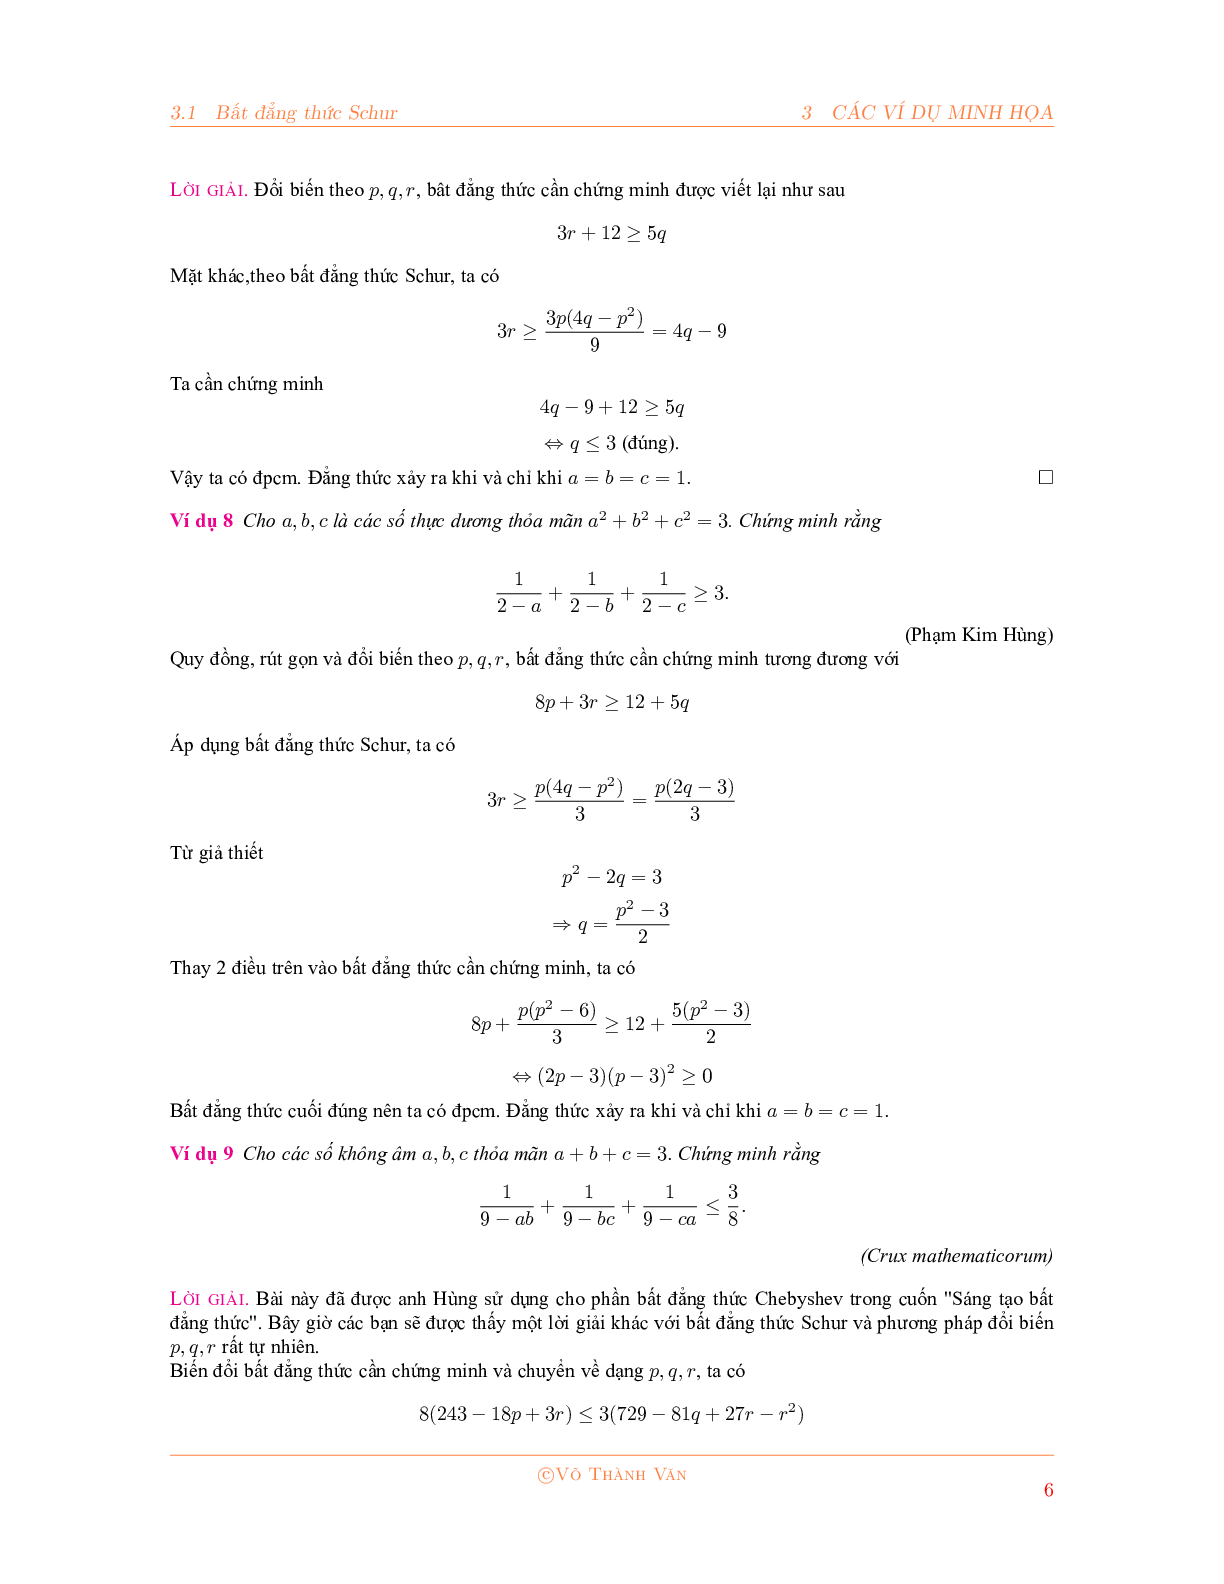 Bất đẳng thức Schur và phương pháp đổi biến P, Q, R 2023 đầy đủ, chi tiết (trang 6)